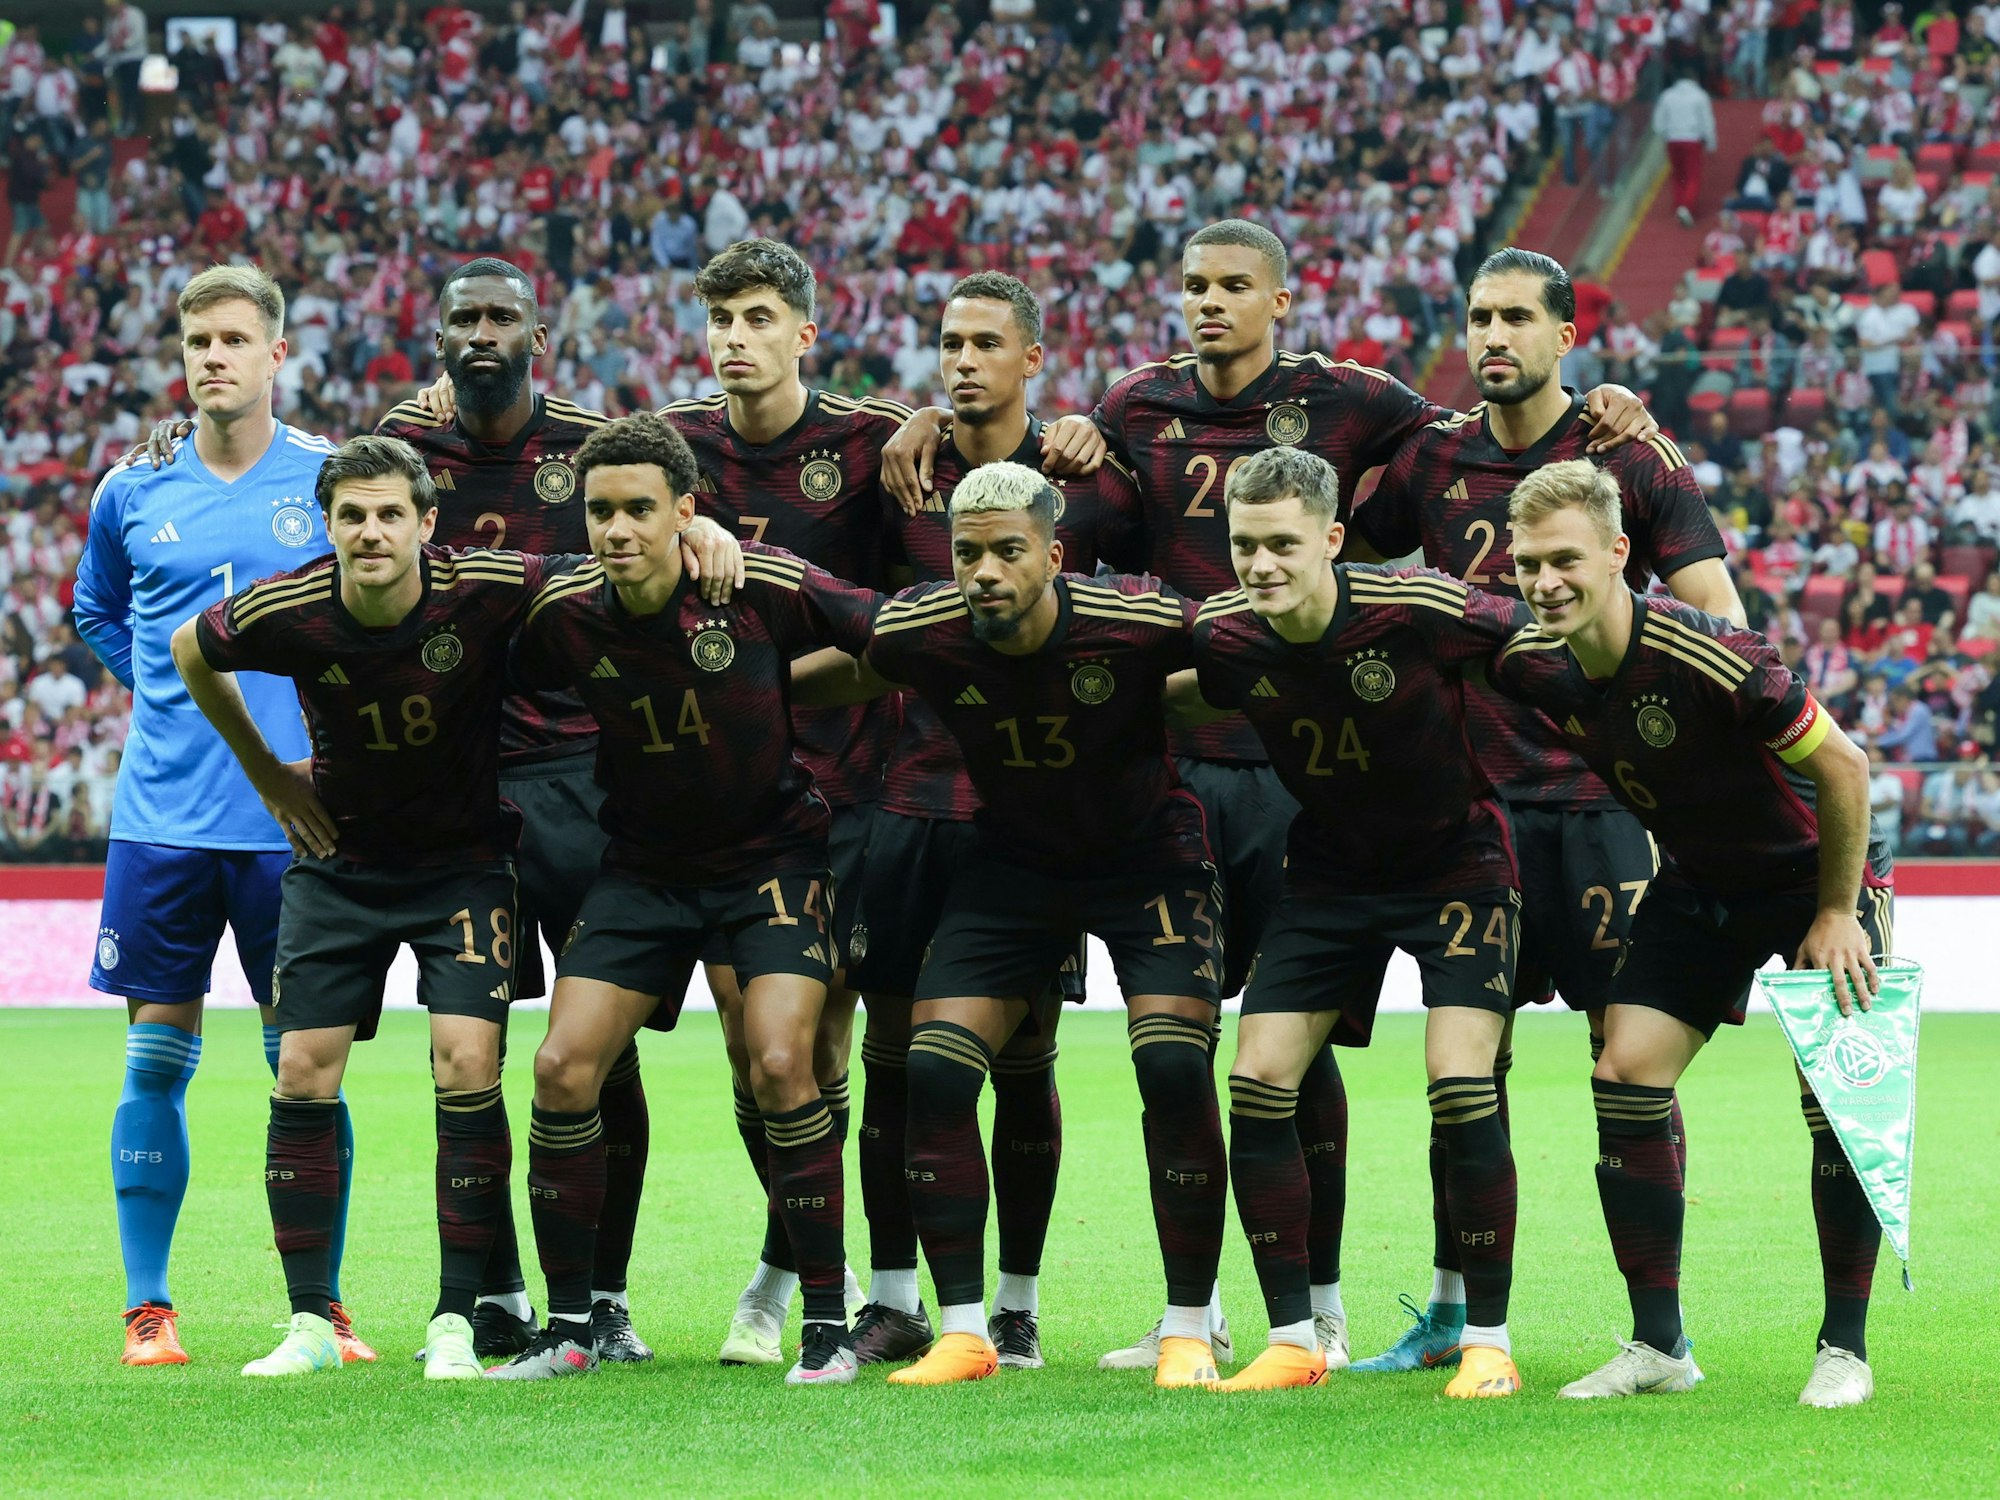 Die Spieler der deutschen Fußball-Nationalmannschaft haben vor dem Spiel Aufstellung für ein Gruppenbild genommen.